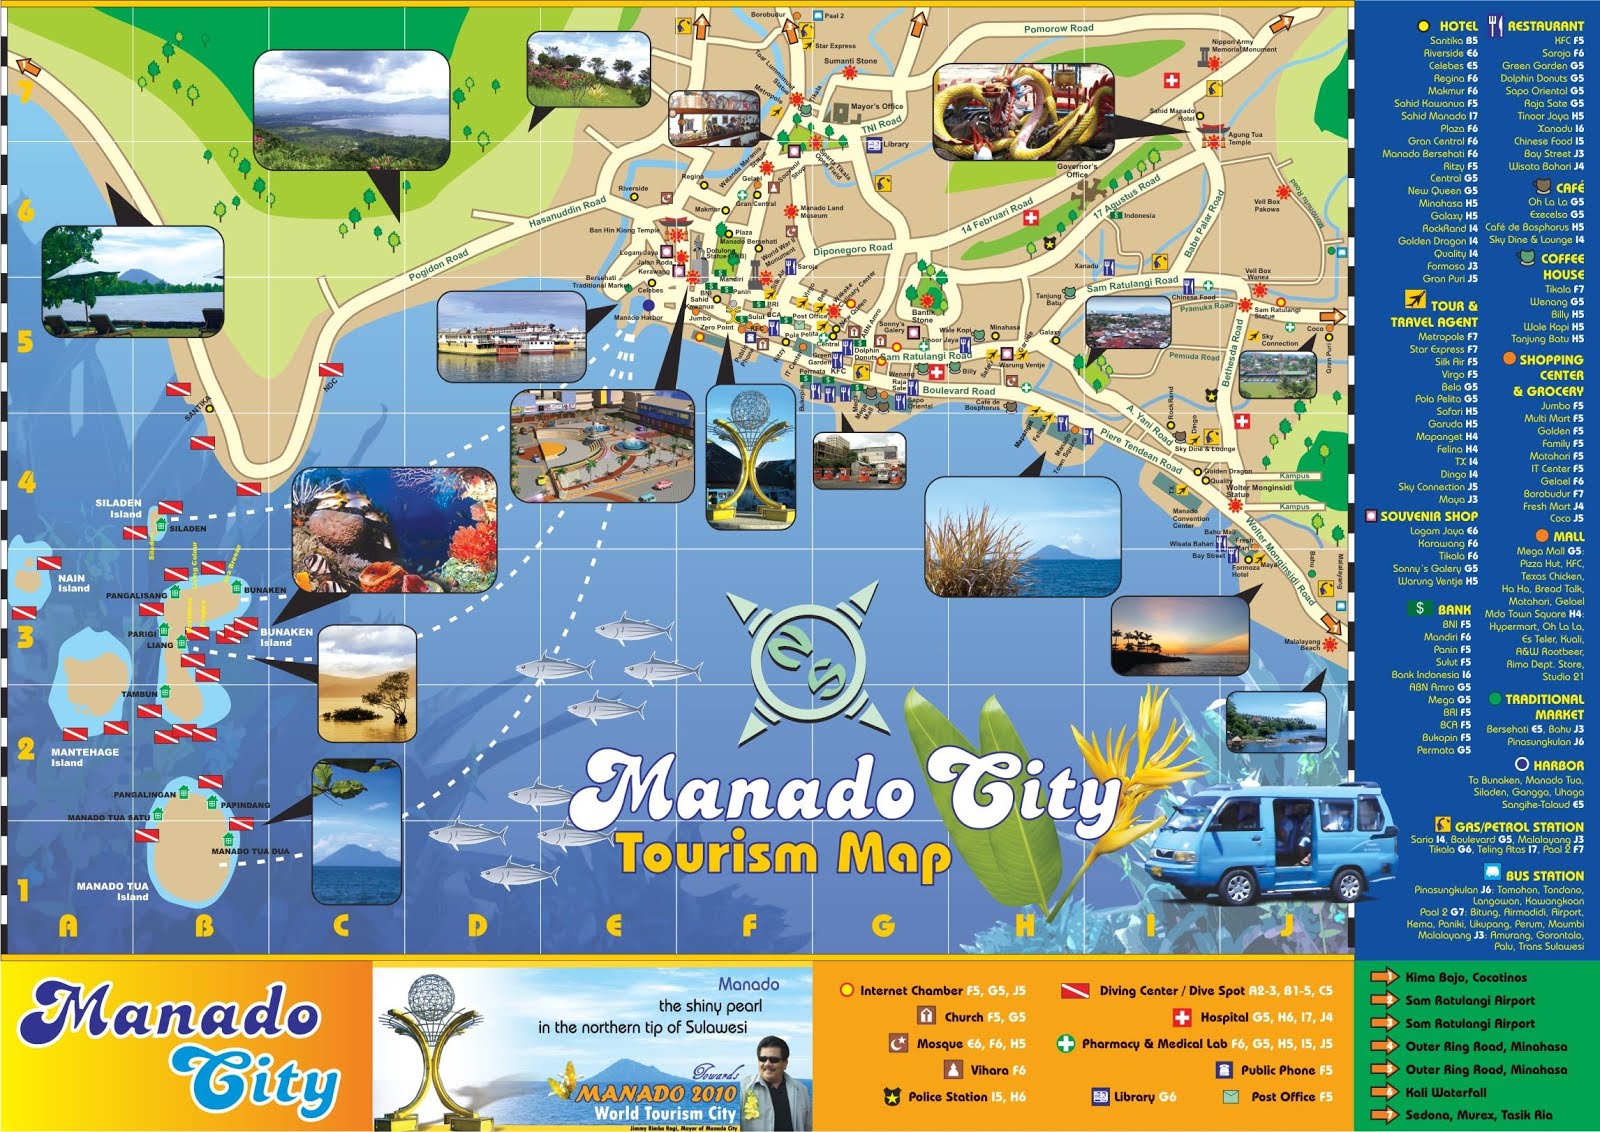 Manado City Tourism Map